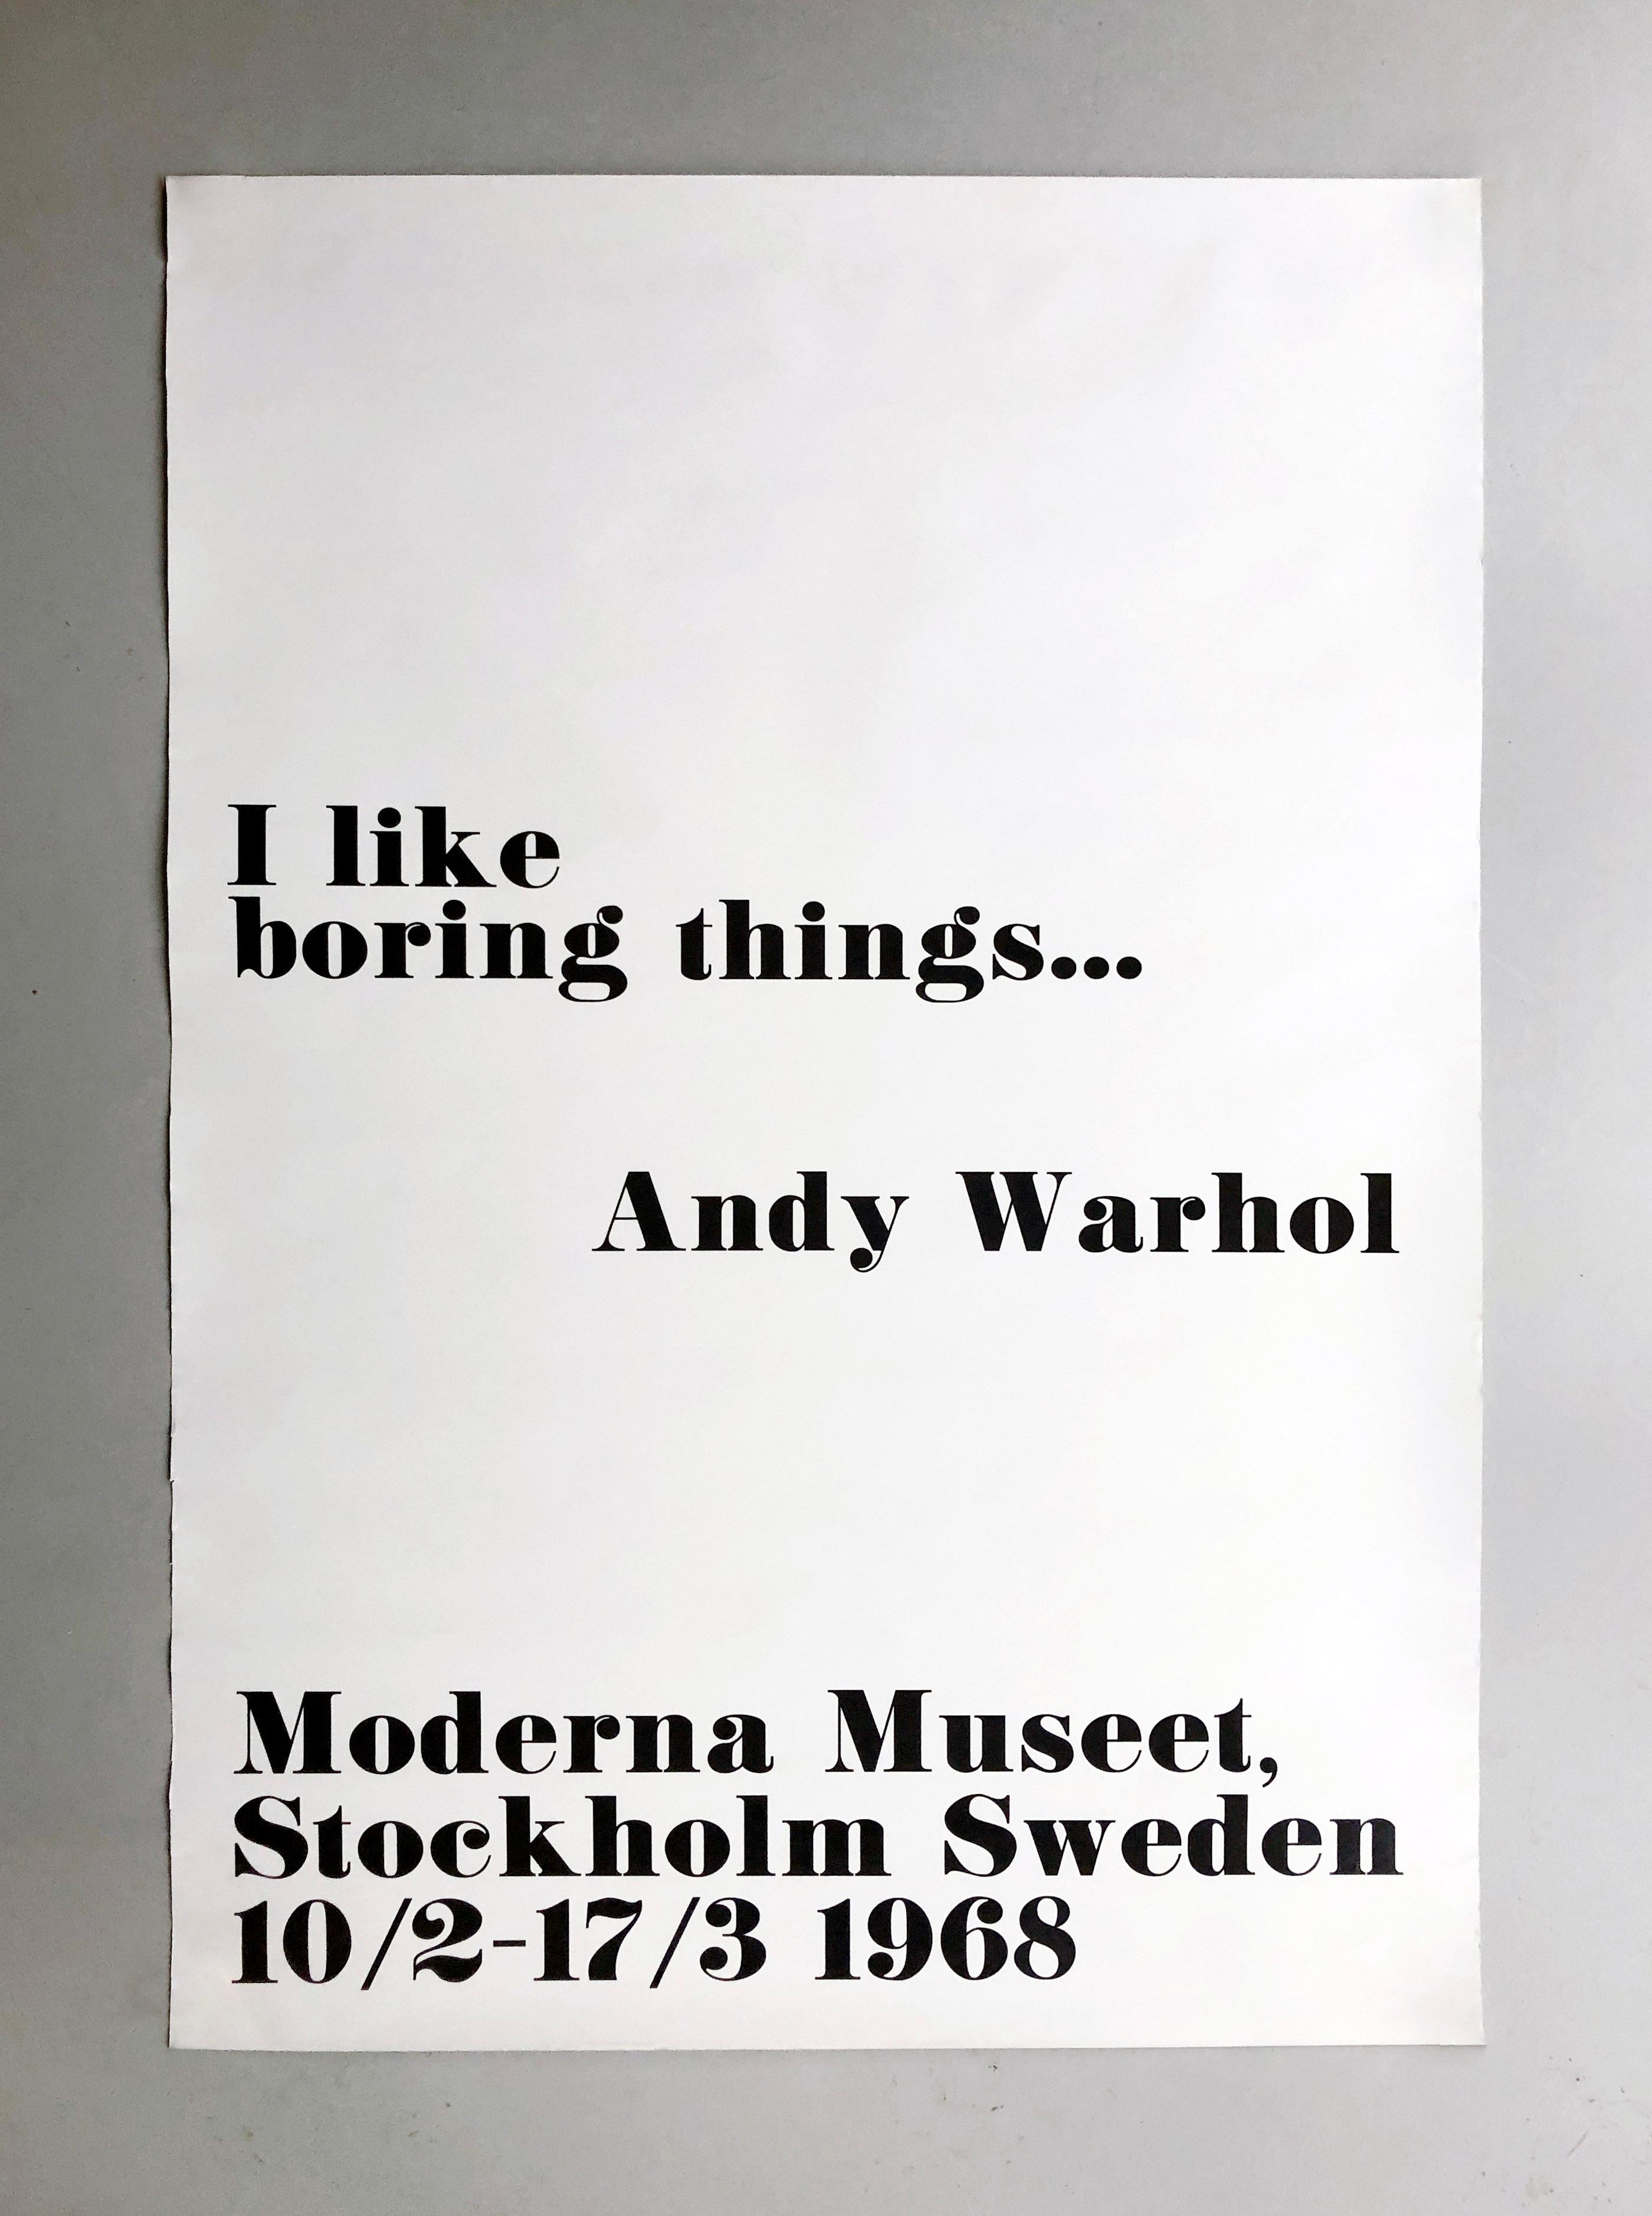 Moderna Museet, Stockholm Suède 10/2-17/3 1968
Affiche promotionnelle originale d'époque pour l'exposition personnelle d'Andy Warhol au Moderna Museet de Stockholm, Suède, qui s'est tenue du 10 février au 17 mars 1968. L'affiche présente un texte